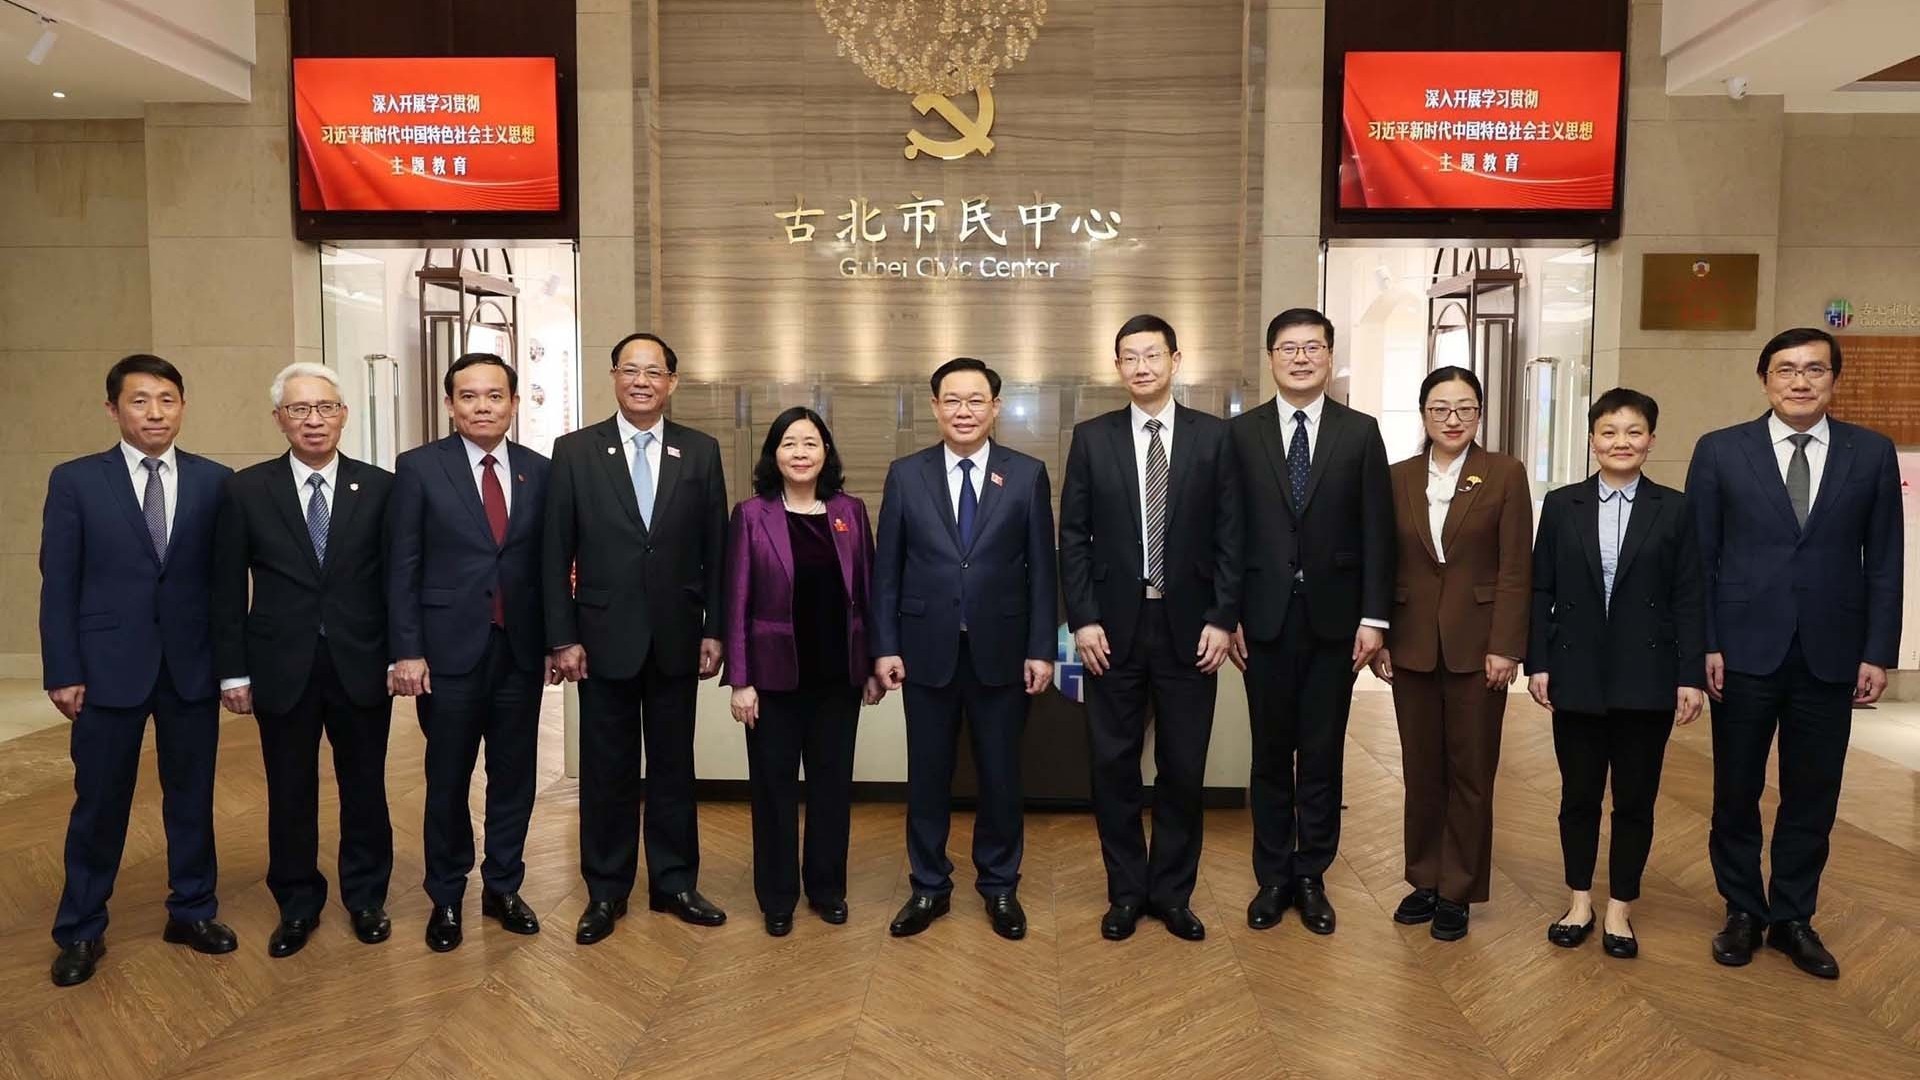 Chủ tịch Quốc hội thăm Trung tâm lập pháp Hồng Kiều, thành phố Thượng Hải, Trung Quốc